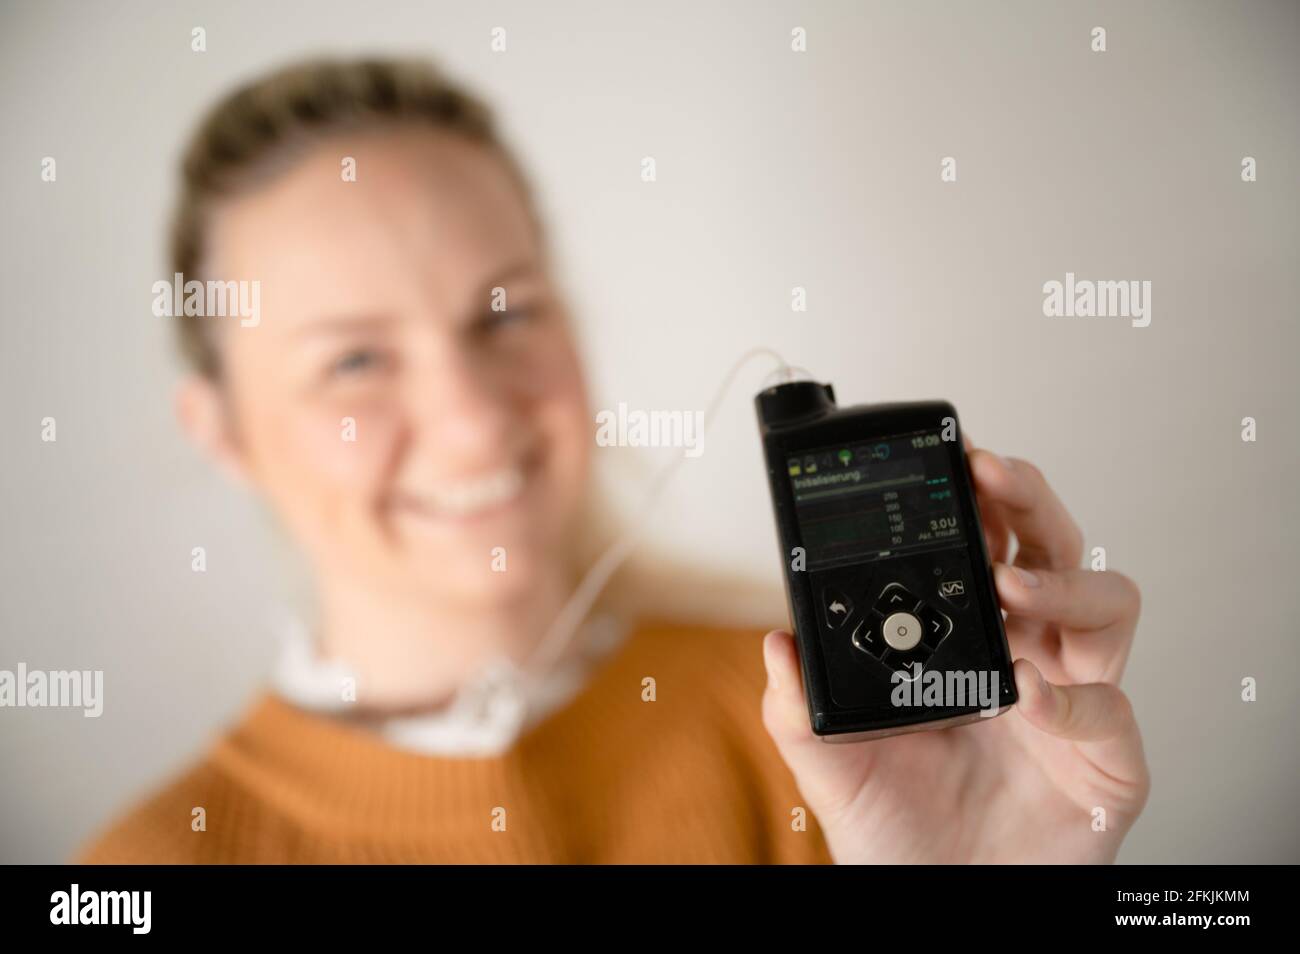 Attraktive blonde Frau hält ihre Insulinpumpe - Behandlung von Diabetes Mit Technologie Stockfoto